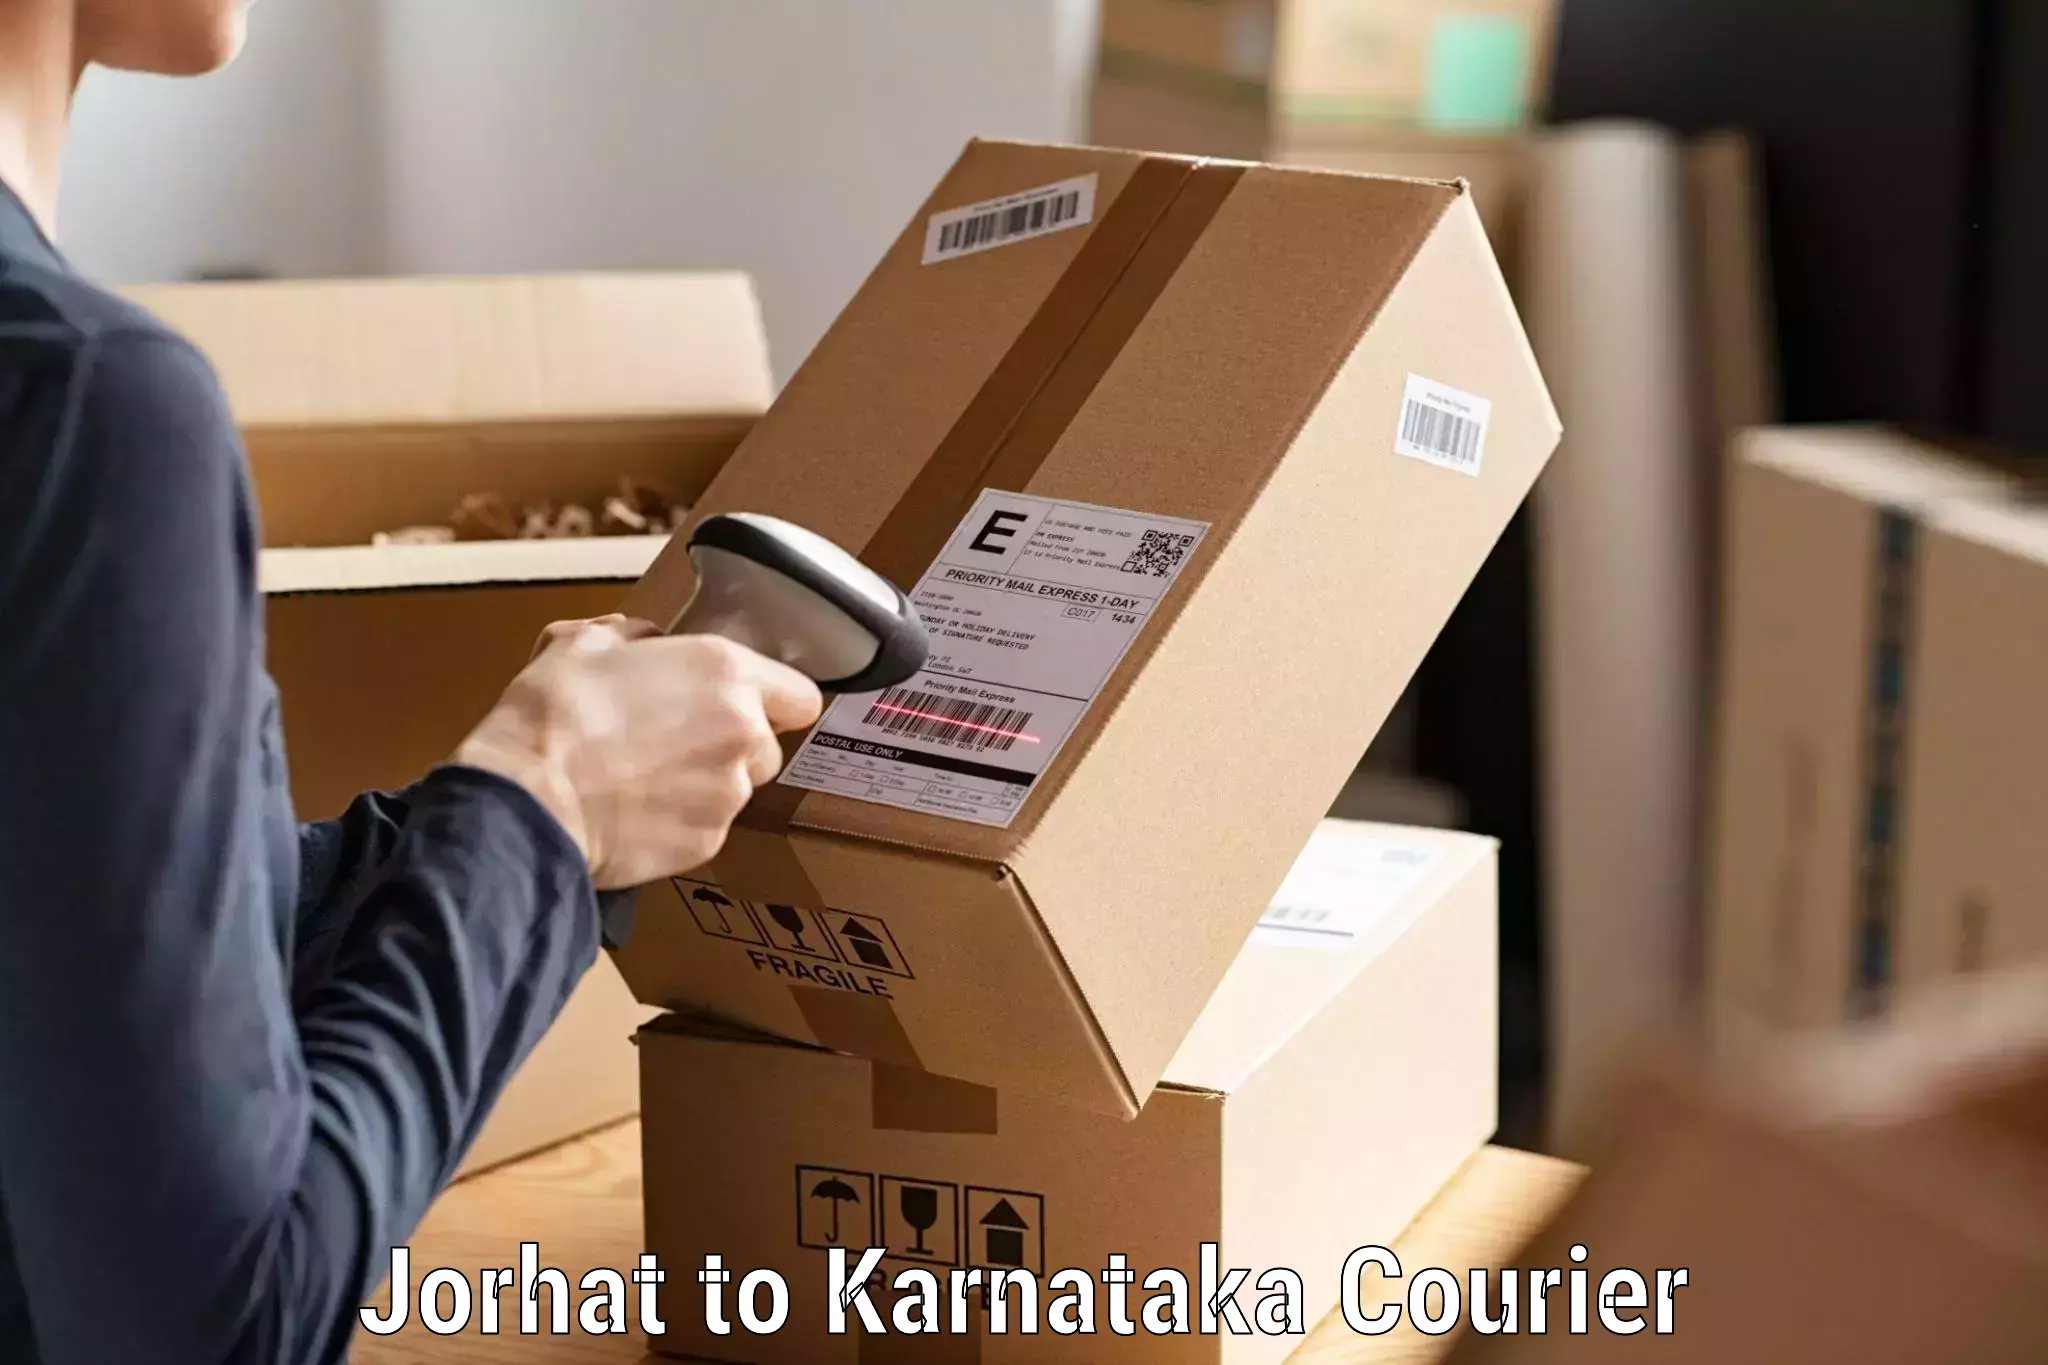 24/7 courier service Jorhat to Anavatti